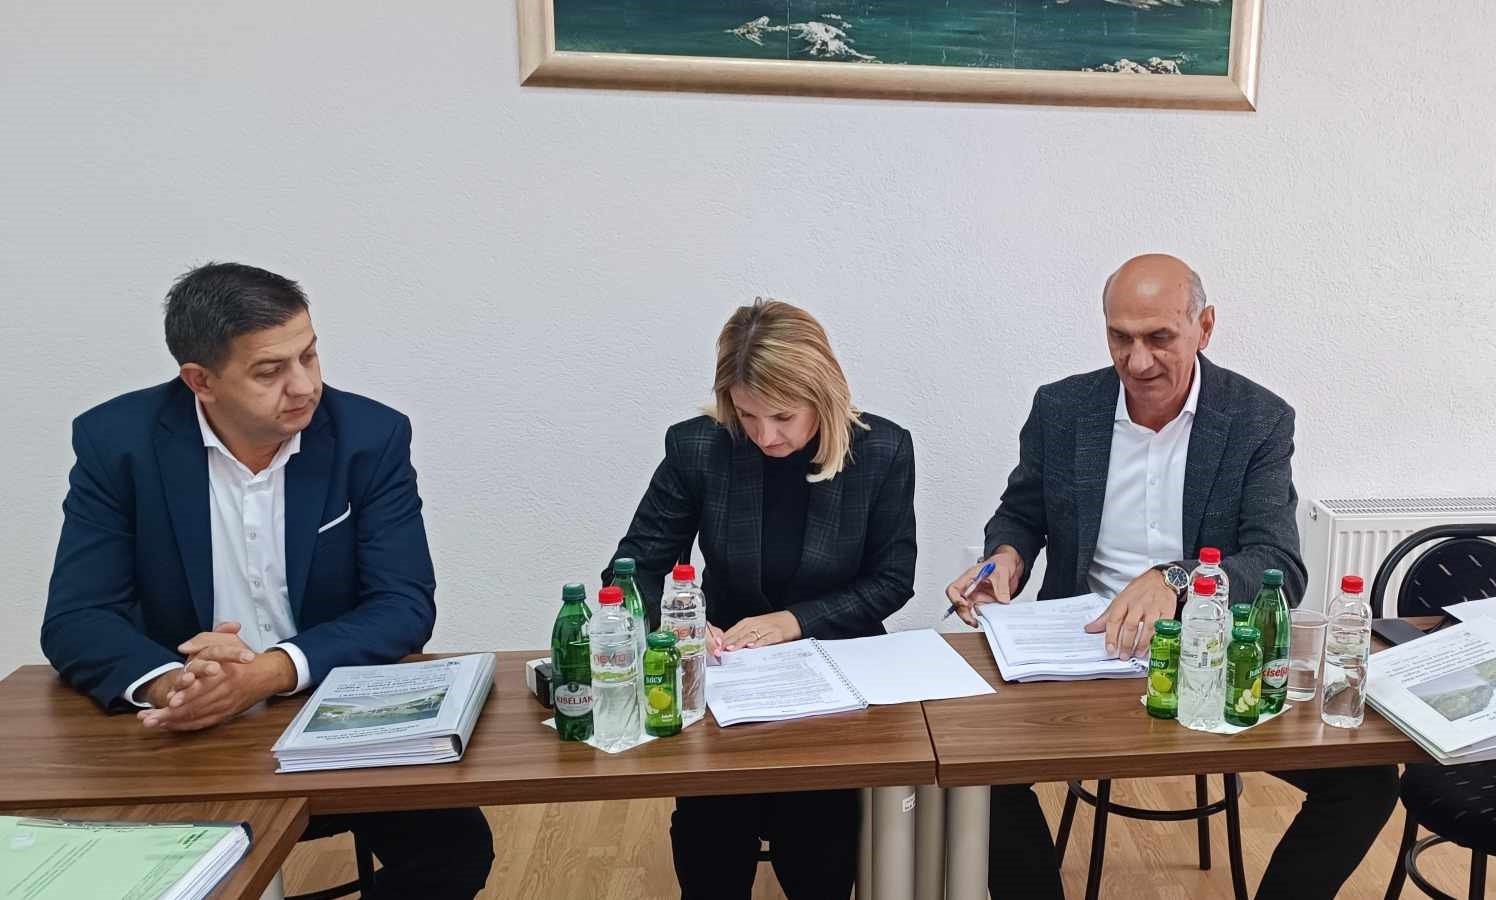 Potpisan Ugovor za rekonstrukciju regionalnog puta od Tomića do Komara. Uskoro počinju radovi!